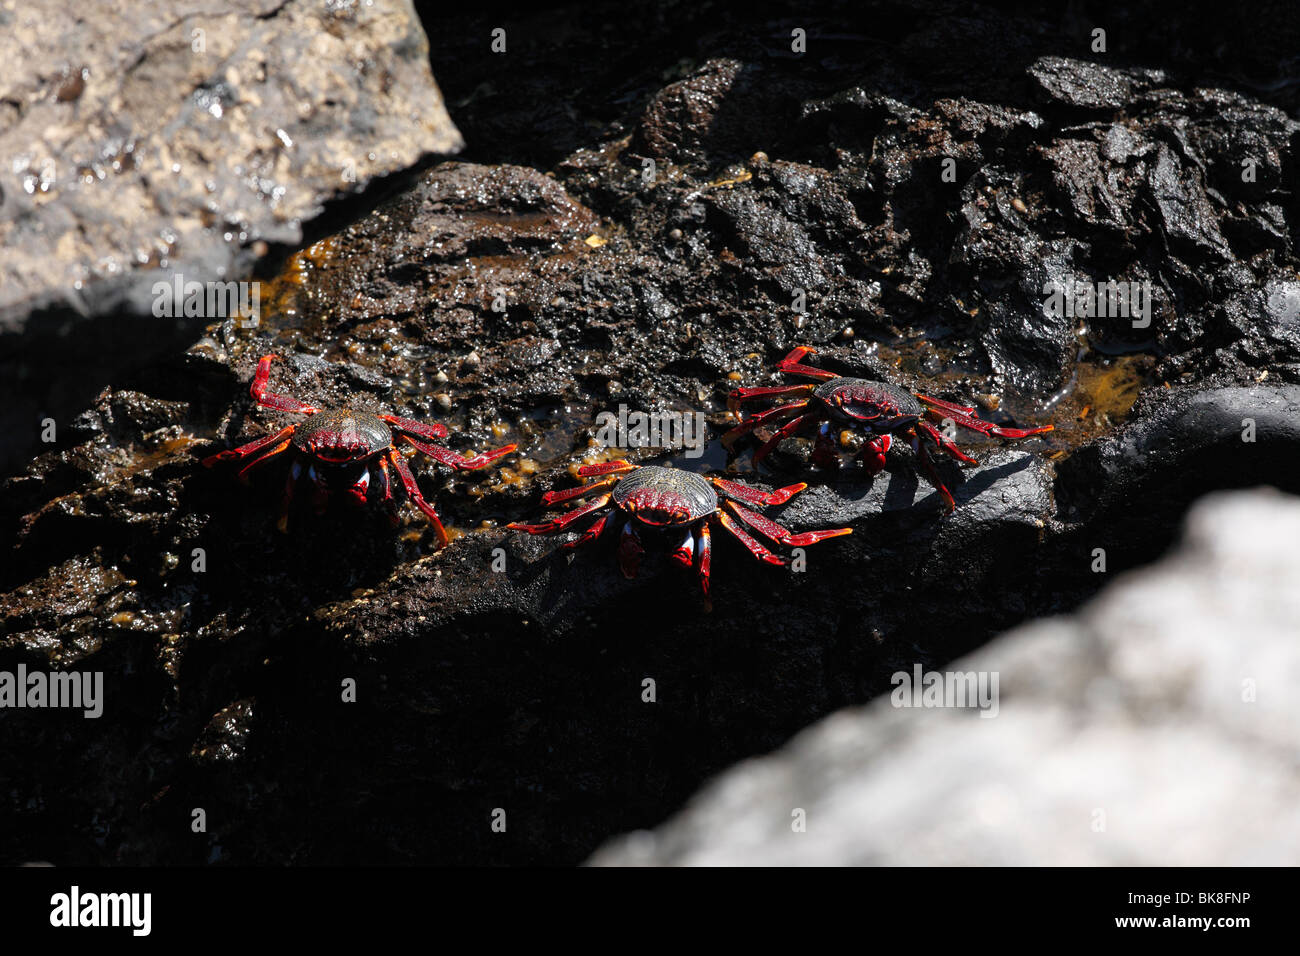 Los cangrejos rojos, La Palma, Islas Canarias, España Foto de stock